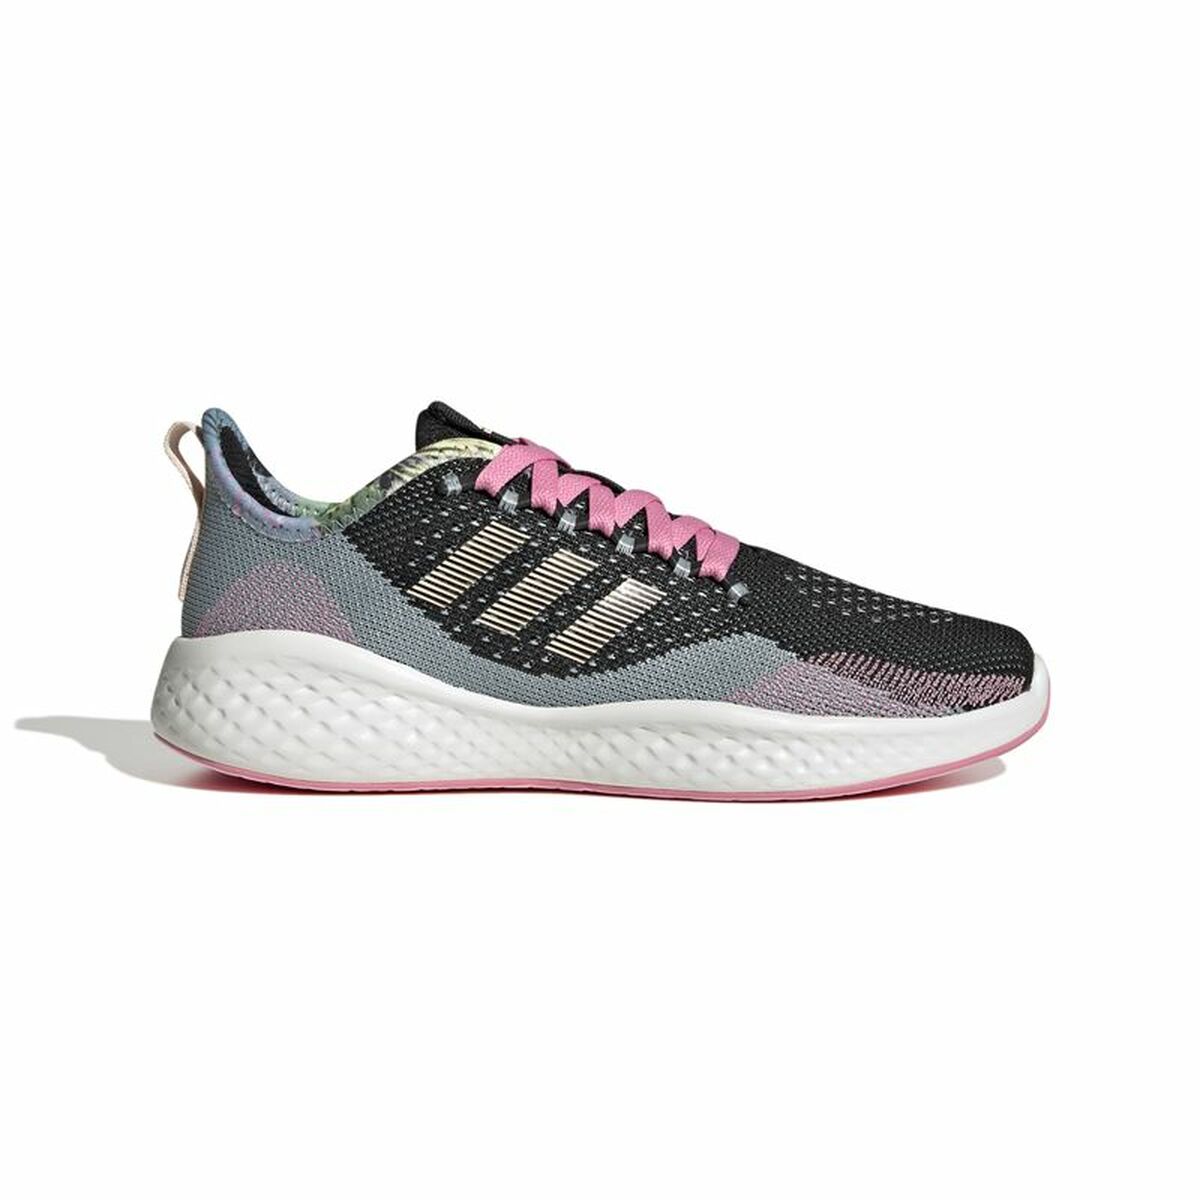 Încălțăminte de Running pentru Adulți Adidas Fluidflow Negru Gri Femeie - Mărime la picior 40 2/3